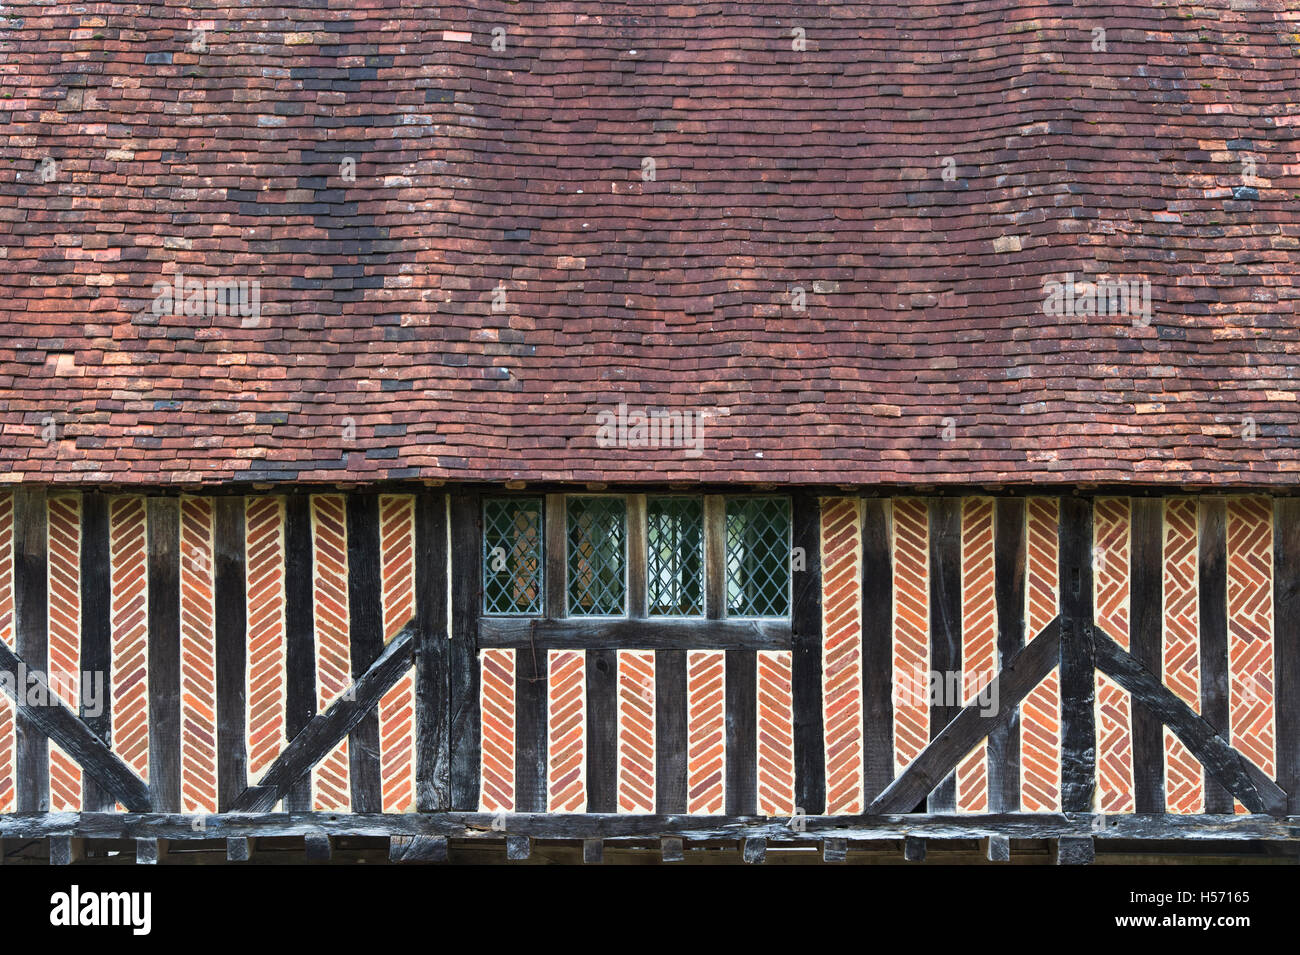 Telaio in legno e mattoni sala del mercato al dettaglio del Weald and Downland Open Air Museum, Singleton, Sussex, Inghilterra Foto Stock